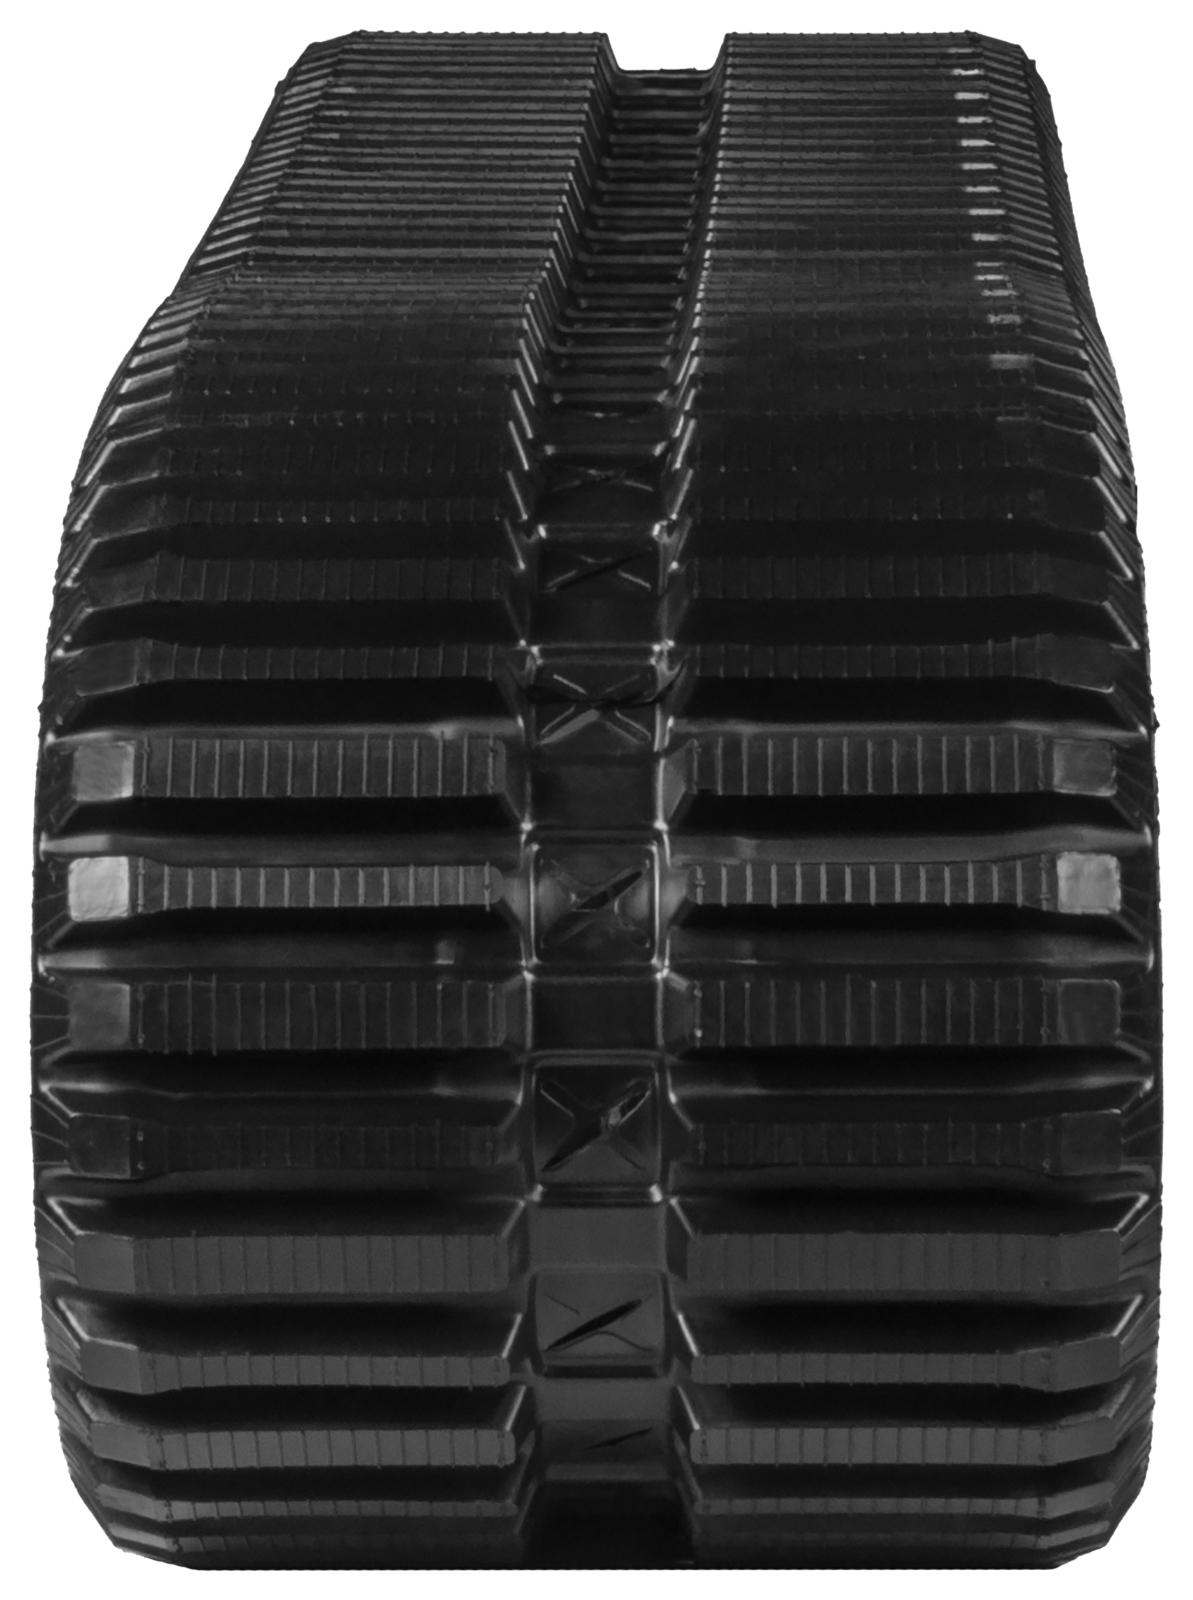 set of 2 18" heavy duty multi-bar pattern rubber track (450x86bx60)